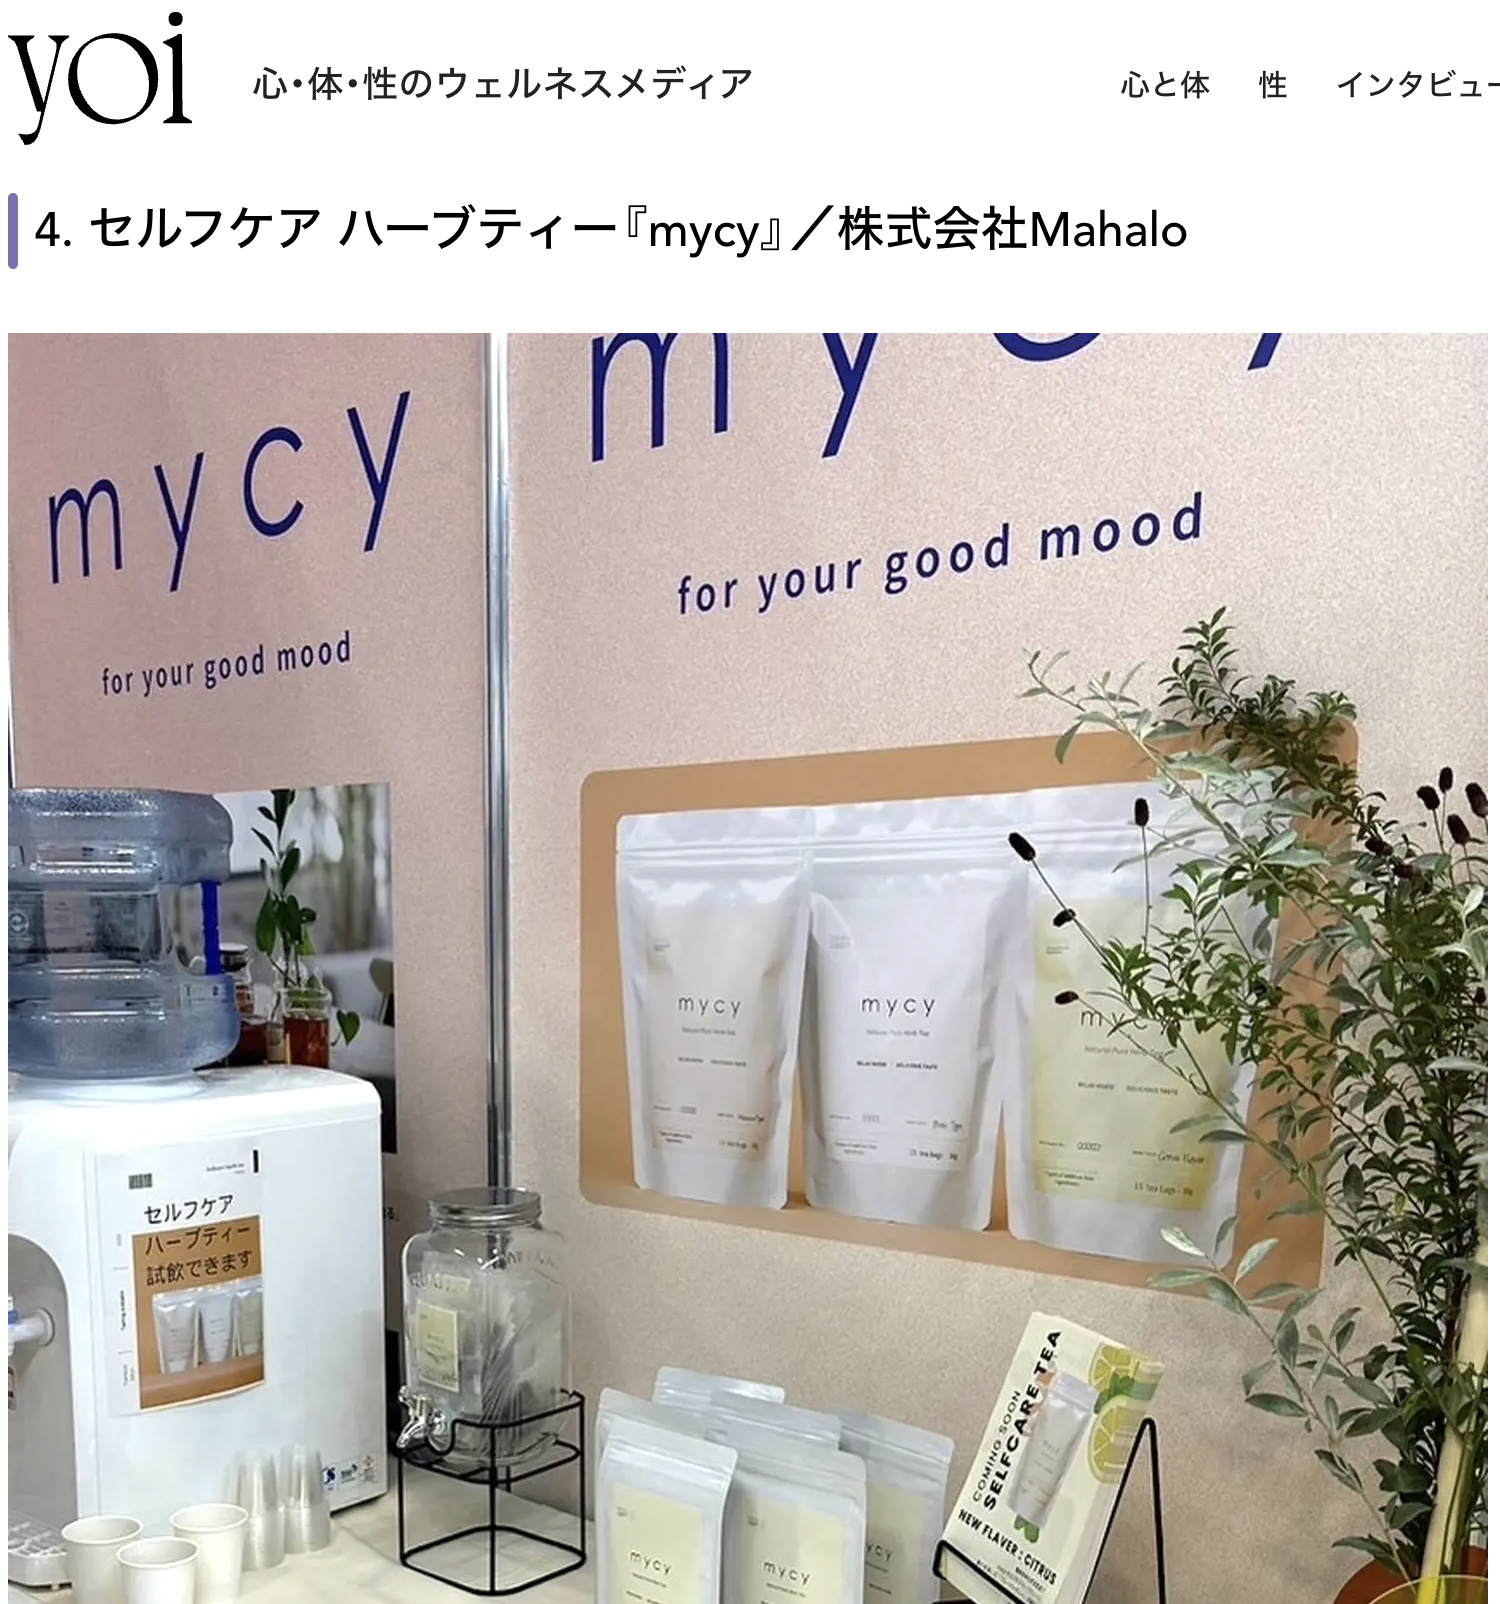 「yoi」 のFemtech TOKYOレポートに掲載されました！　